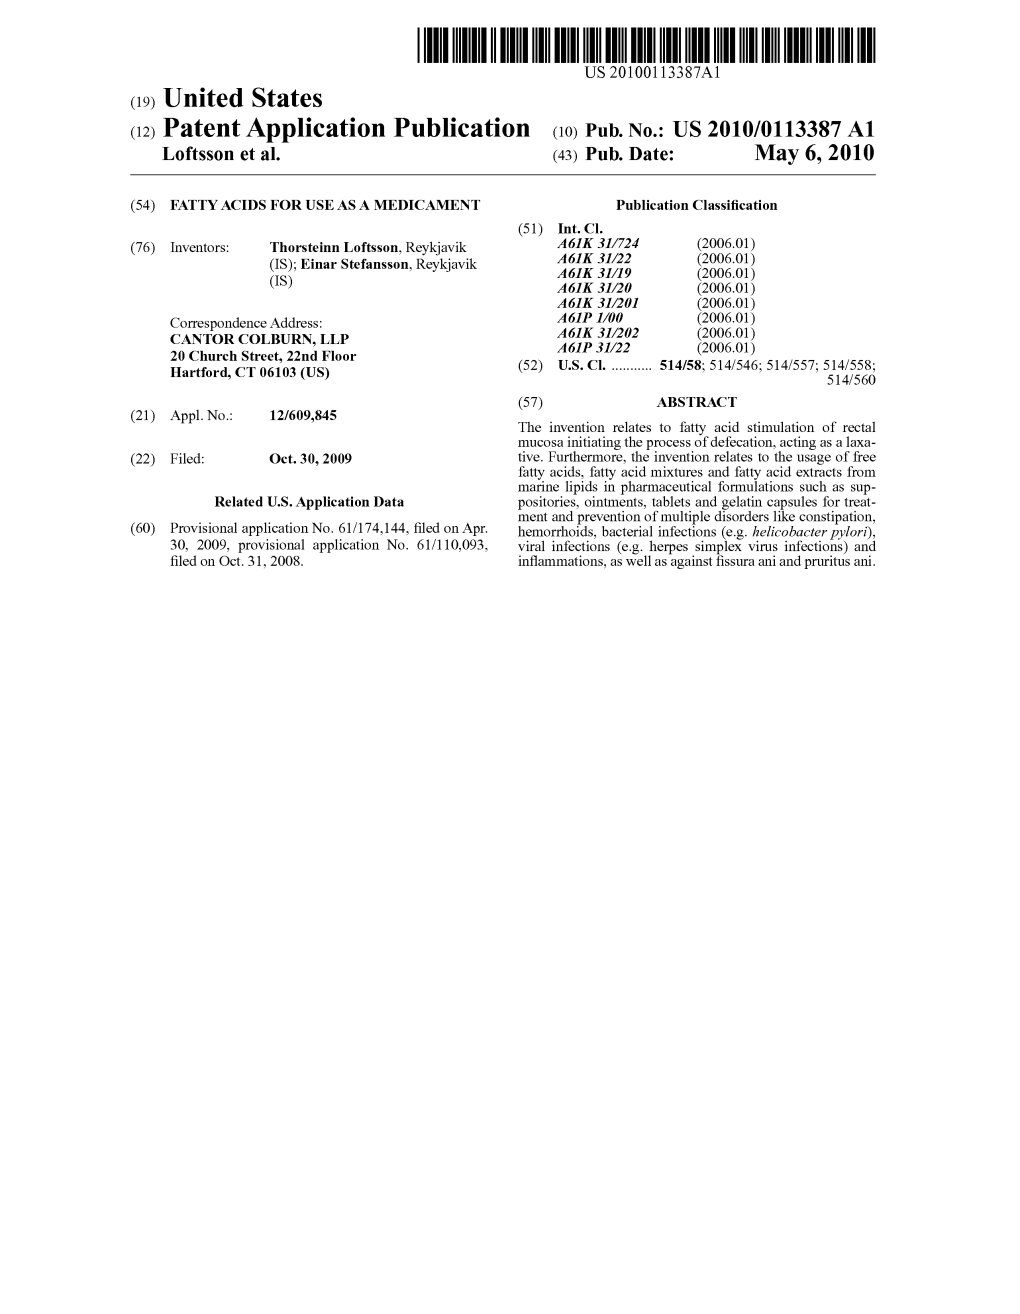 (12) Patent Application Publication (10) Pub. No.: US 2010/0113387 A1 Loftsson Et Al